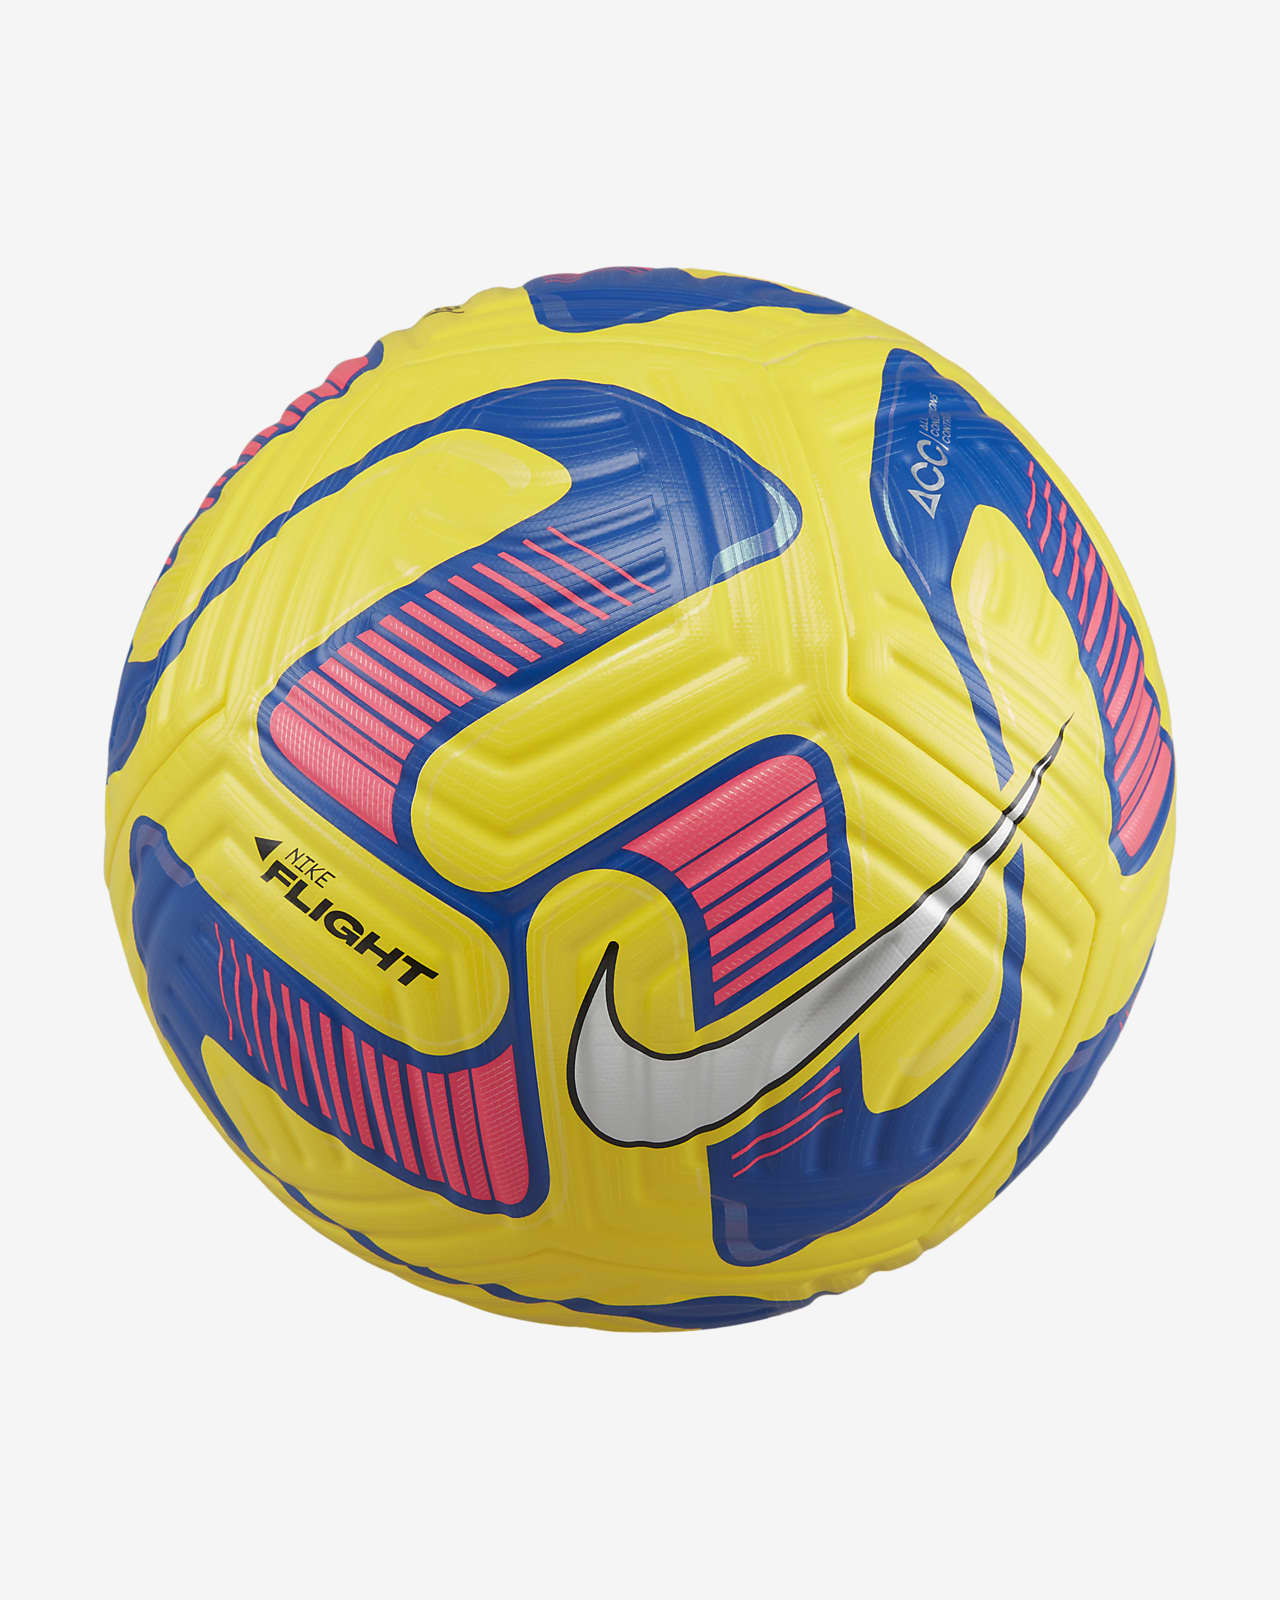 Balón de fútbol Nike Flight.